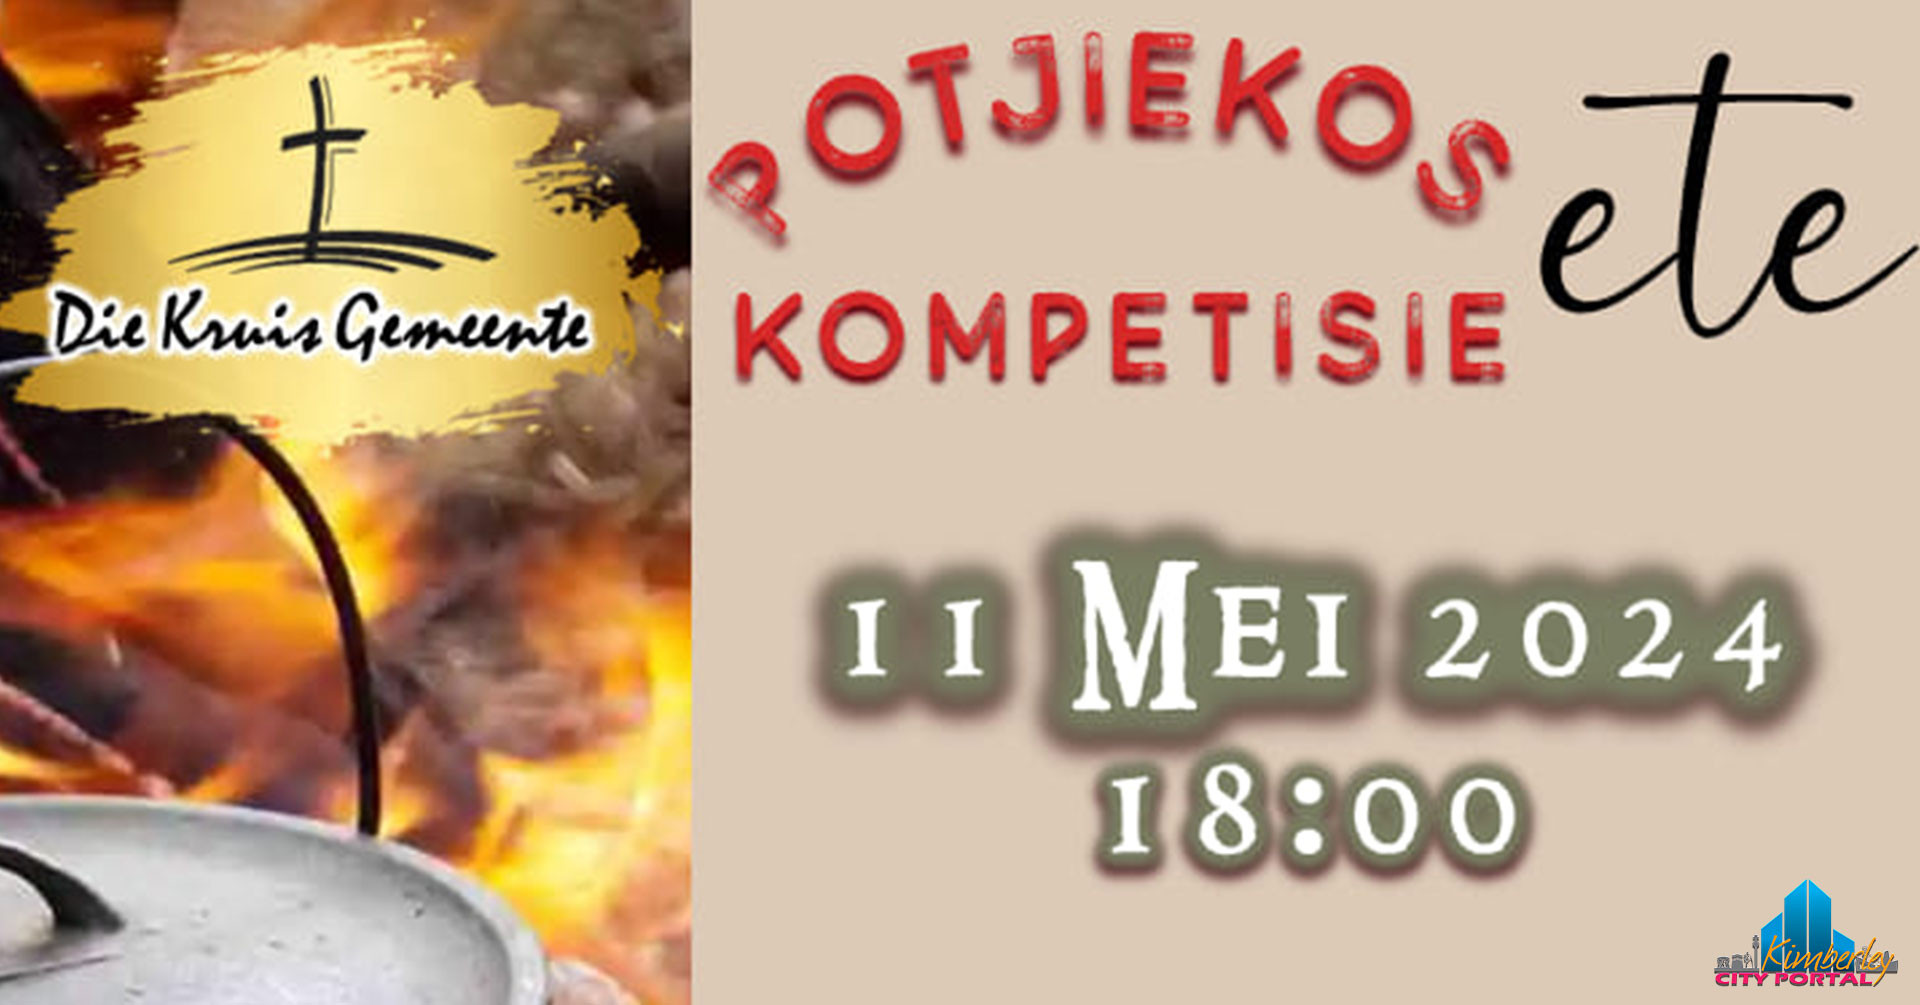 Potjiekos Kompetisie en Ete @ APK Kimberley - Die Kruis